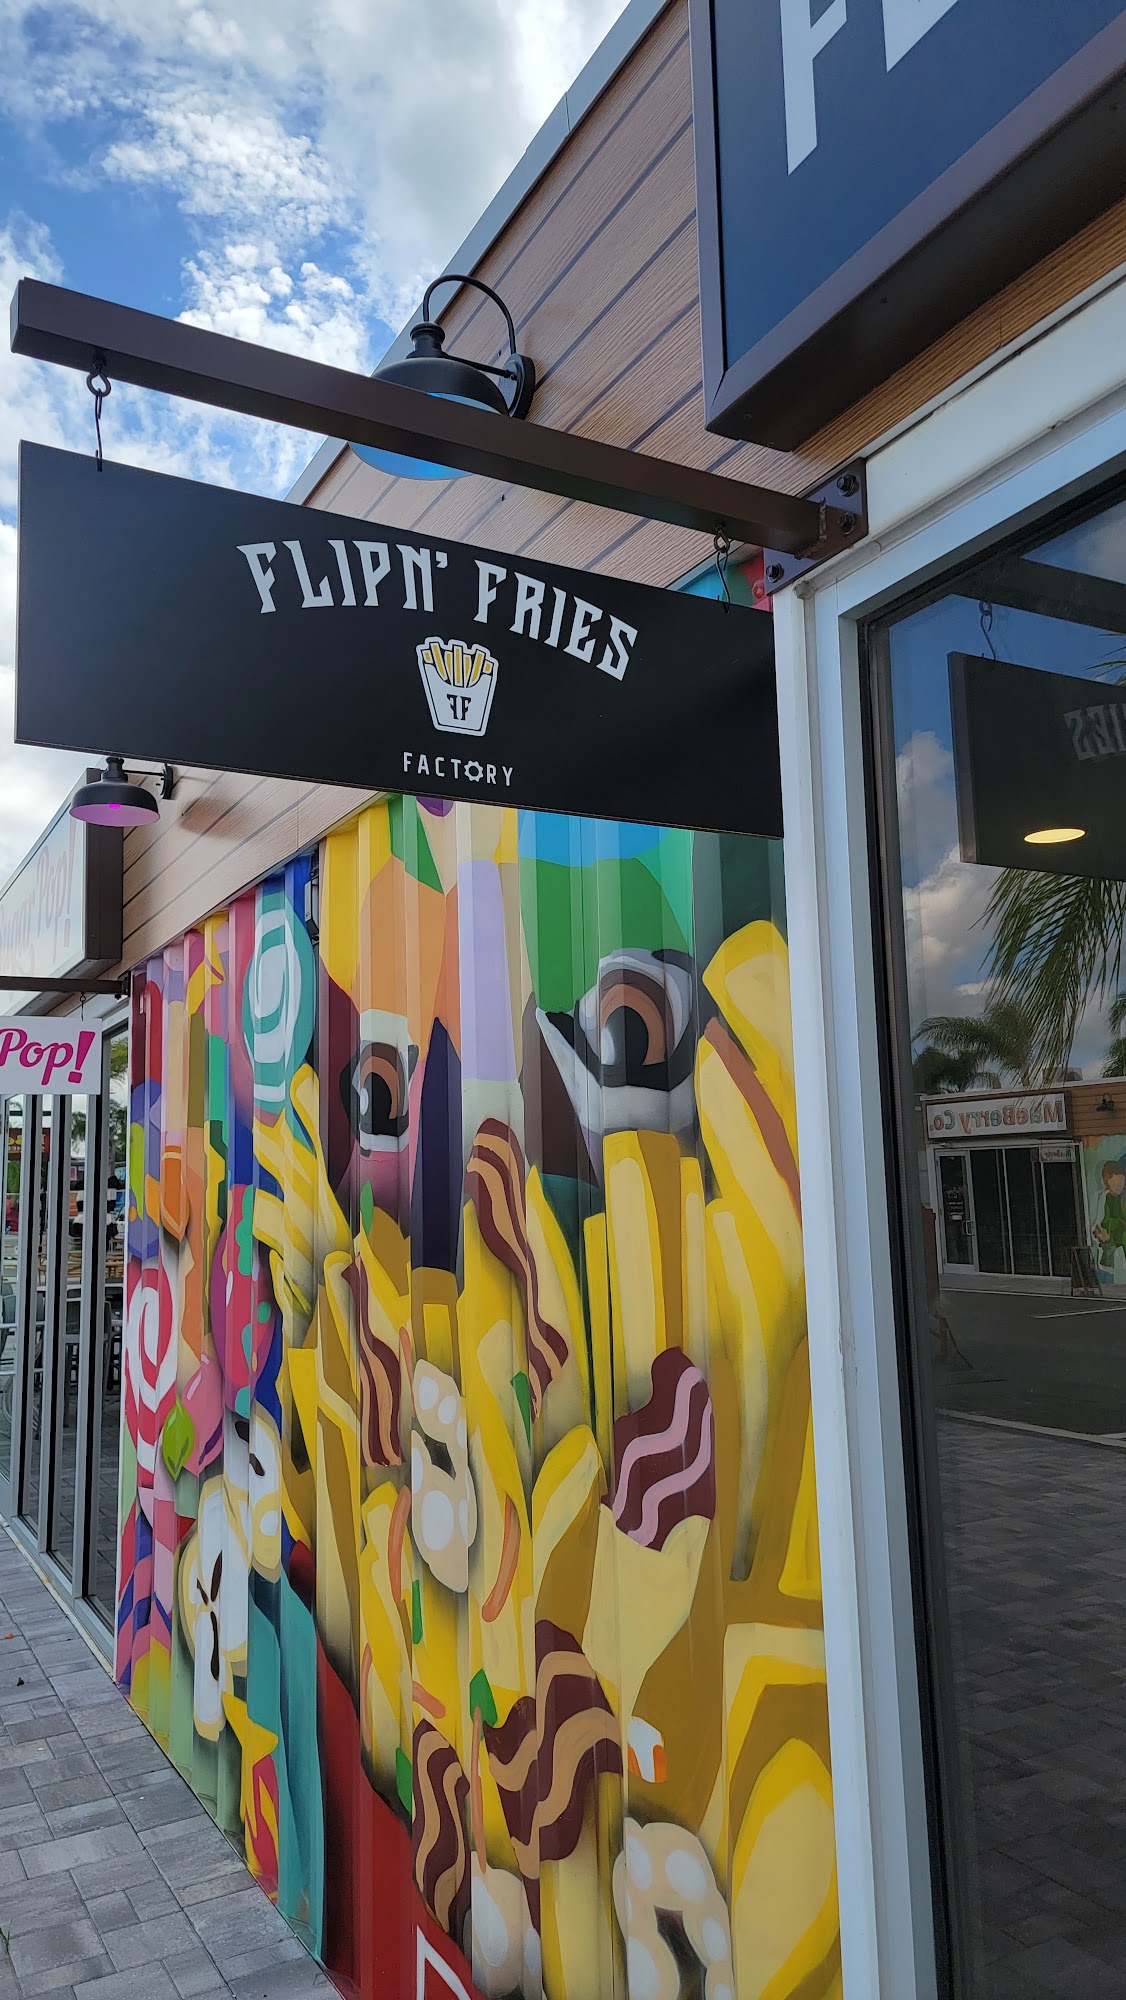 Flipn' Fries Factory